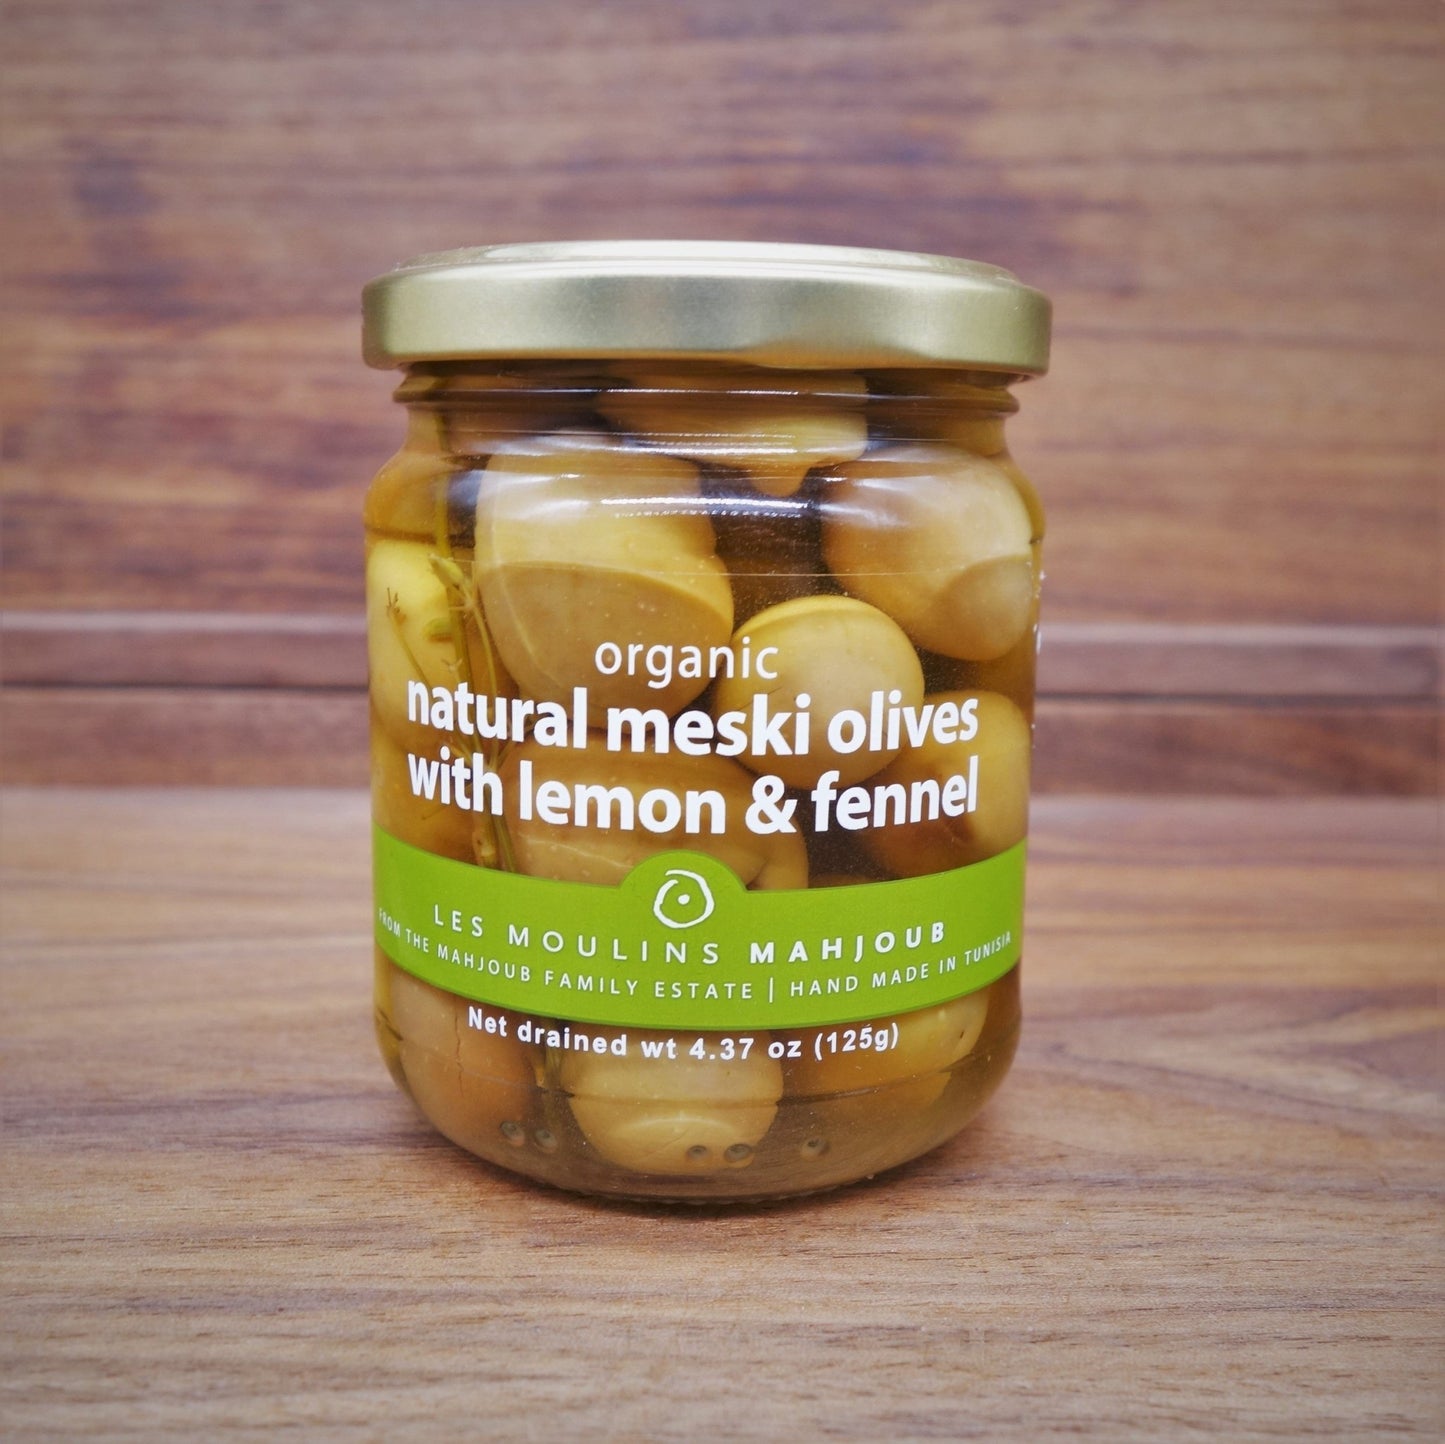 Les Moulins Mahjoub - Meski Olives with Lemon & Fennel - Mongers' Provisions